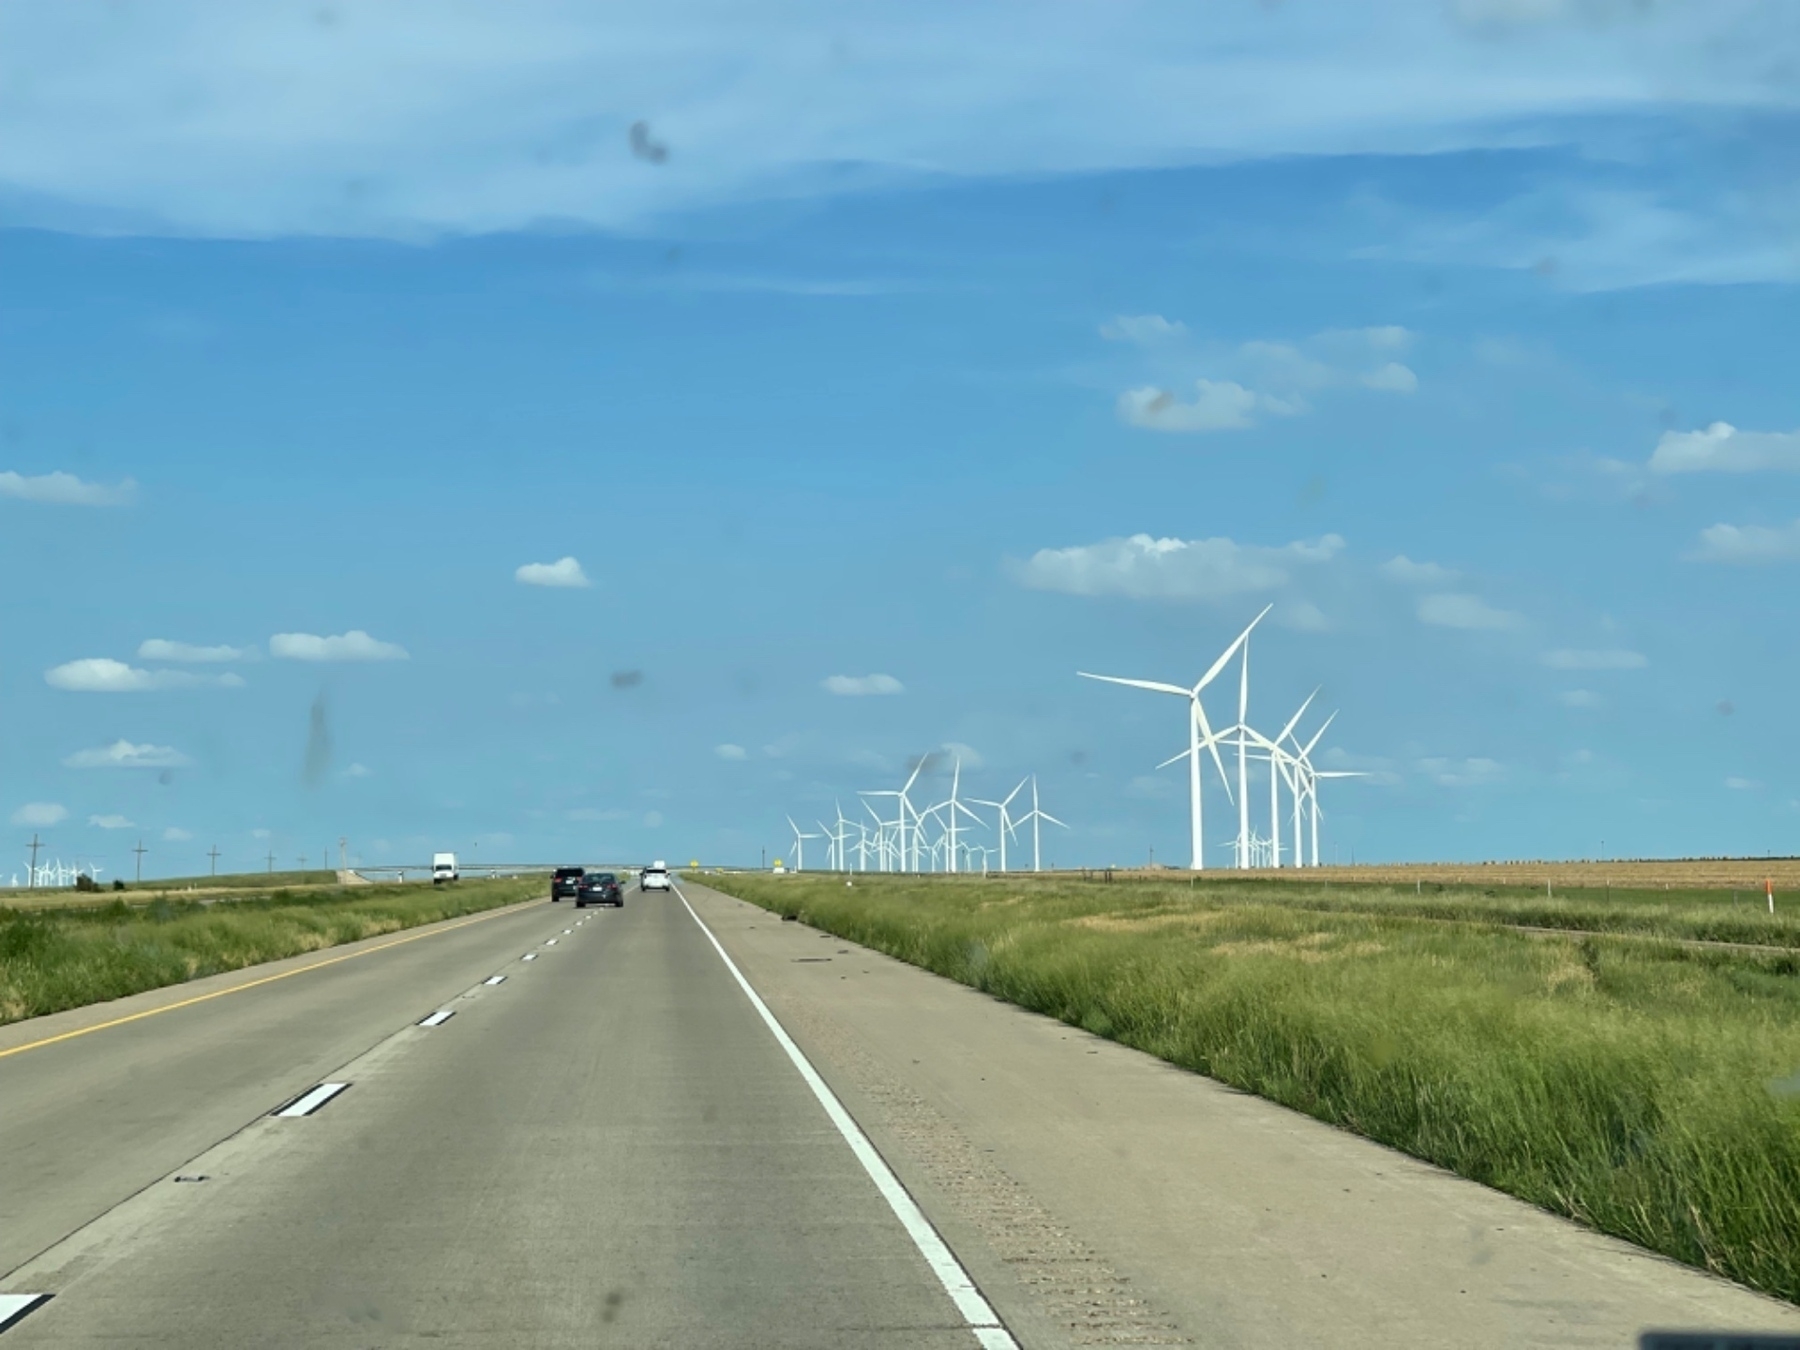 lots of Texas windmills